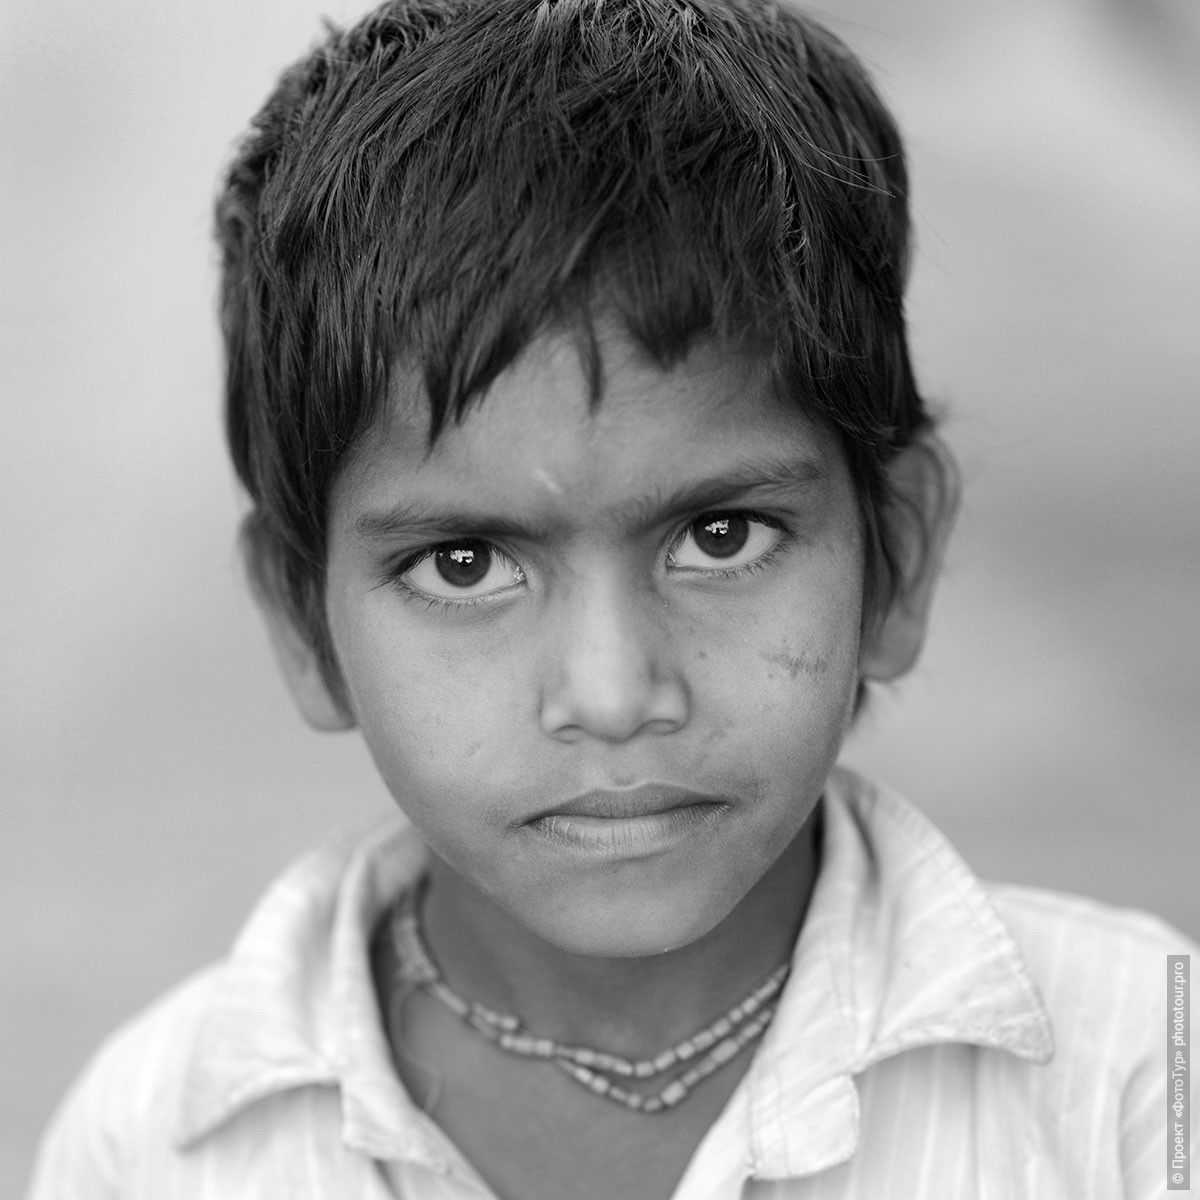 Фото Индийский мальчишечка, Матхура. Фототур по Золотому Треугольнику Индии.